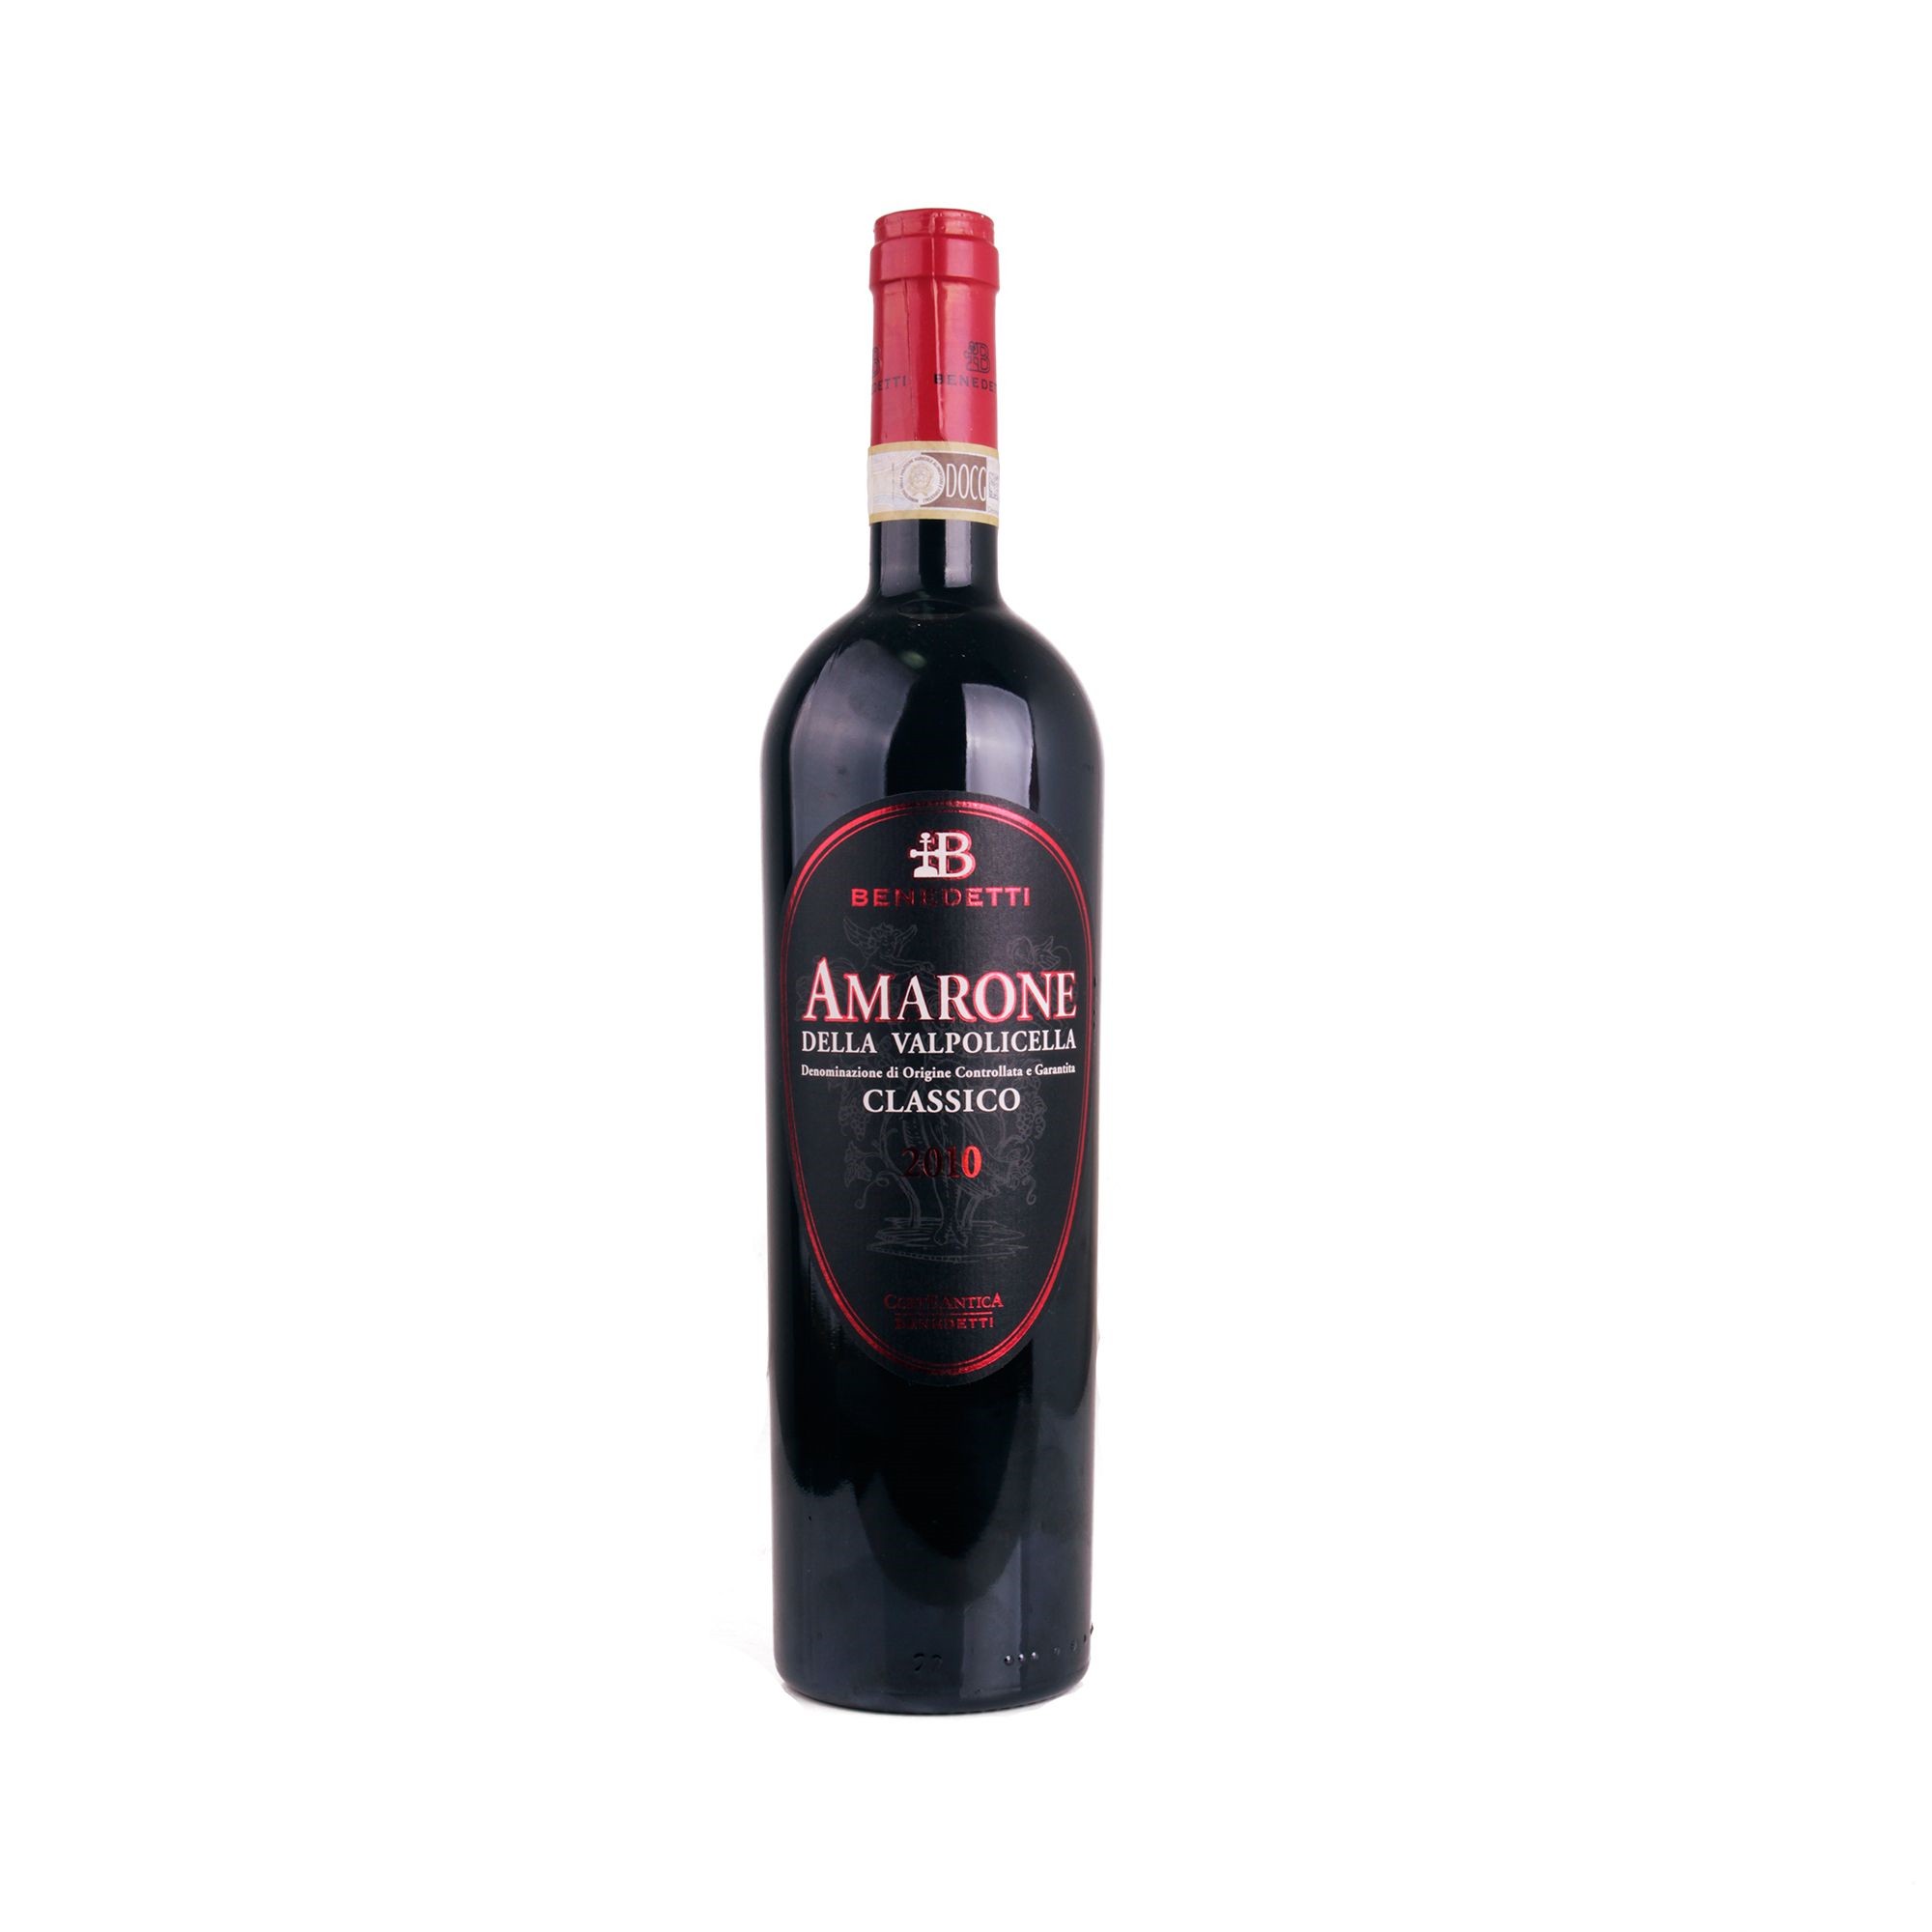 房山混酿经典阿玛罗尼干红葡萄酒